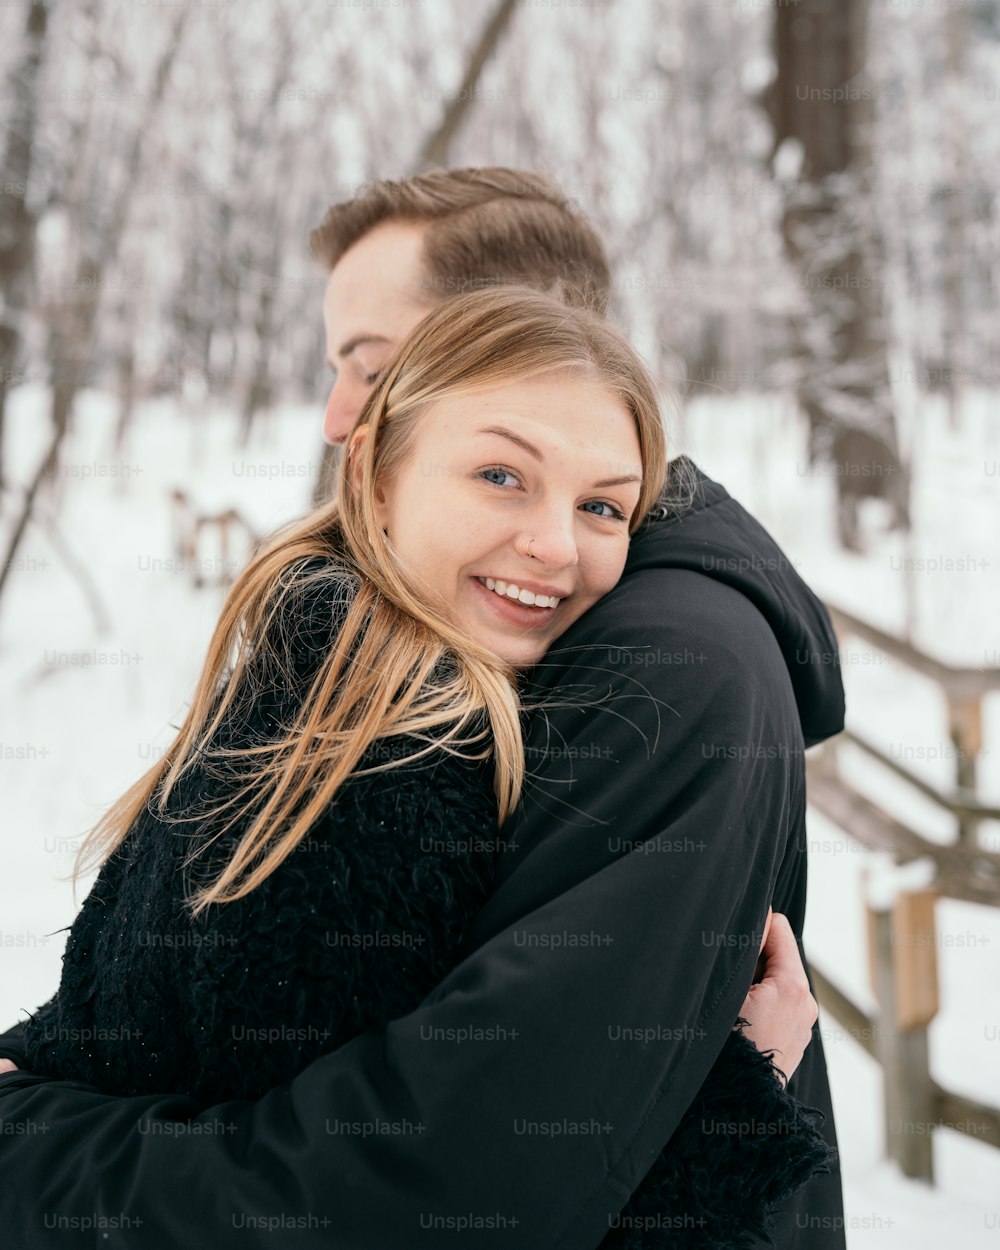 Un uomo che abbraccia una donna nella neve